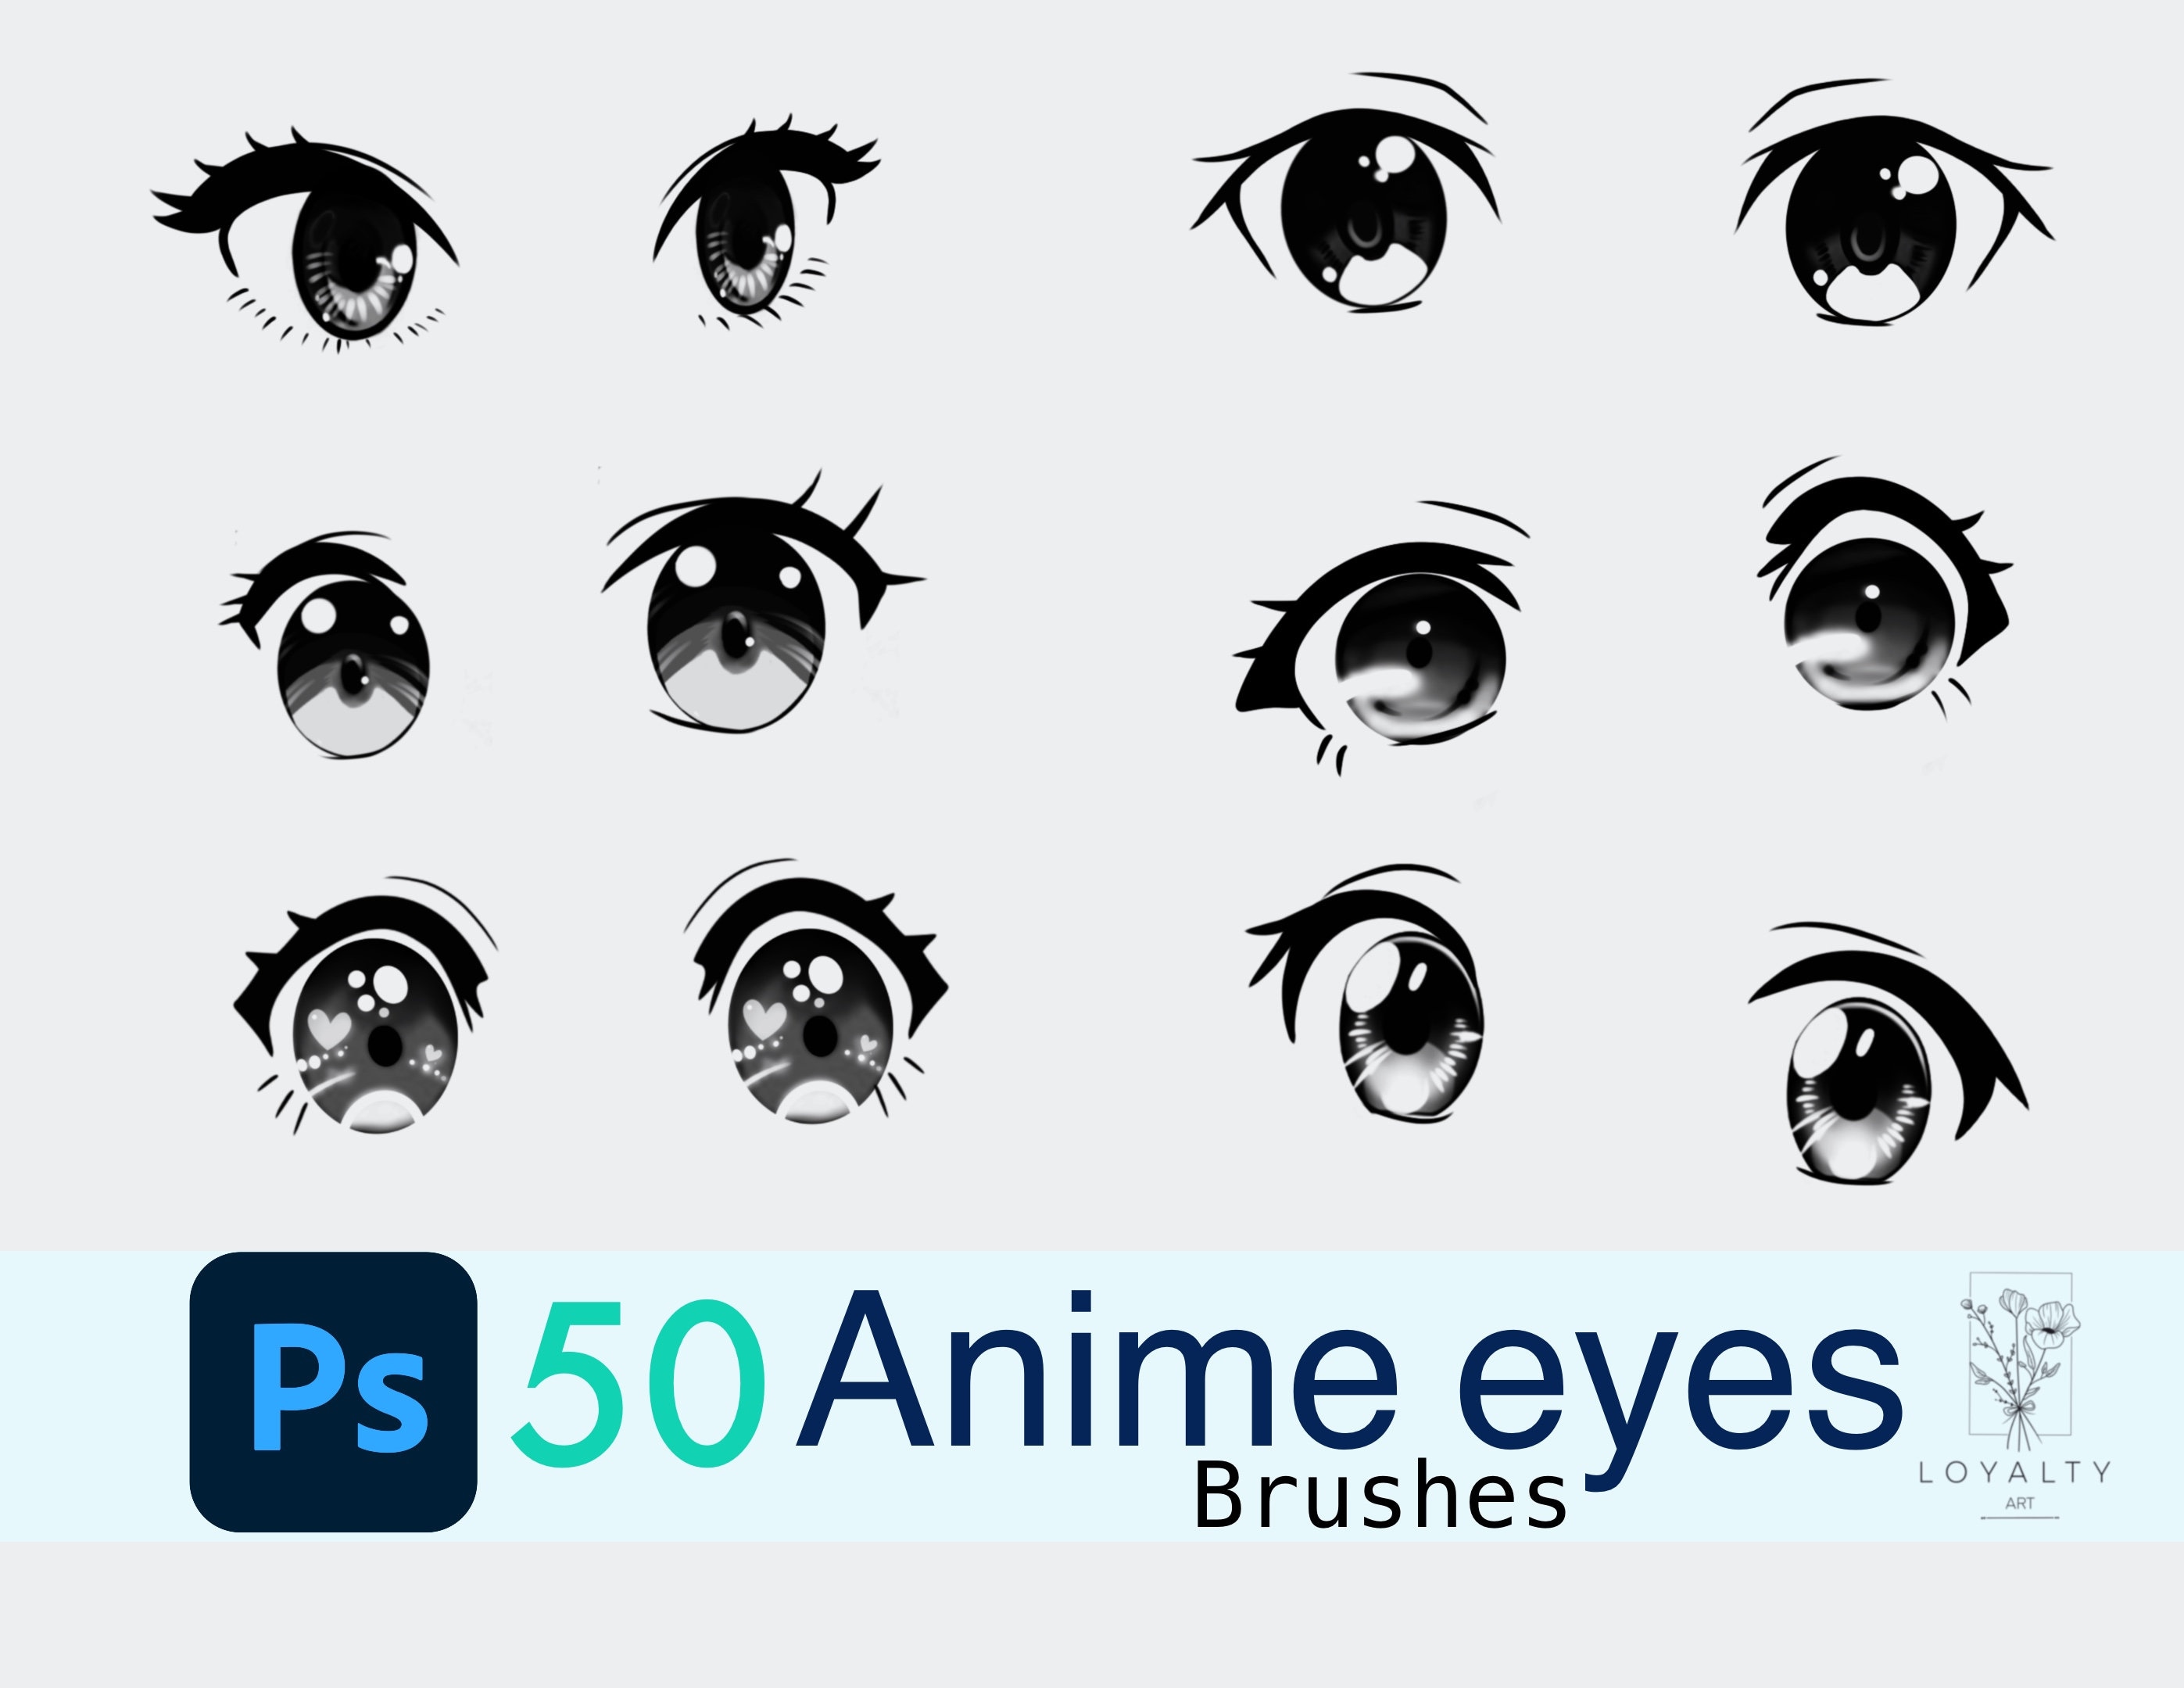 ArtStation  AnimeGhibli inspired cloud brushes for Photoshop  Brushes